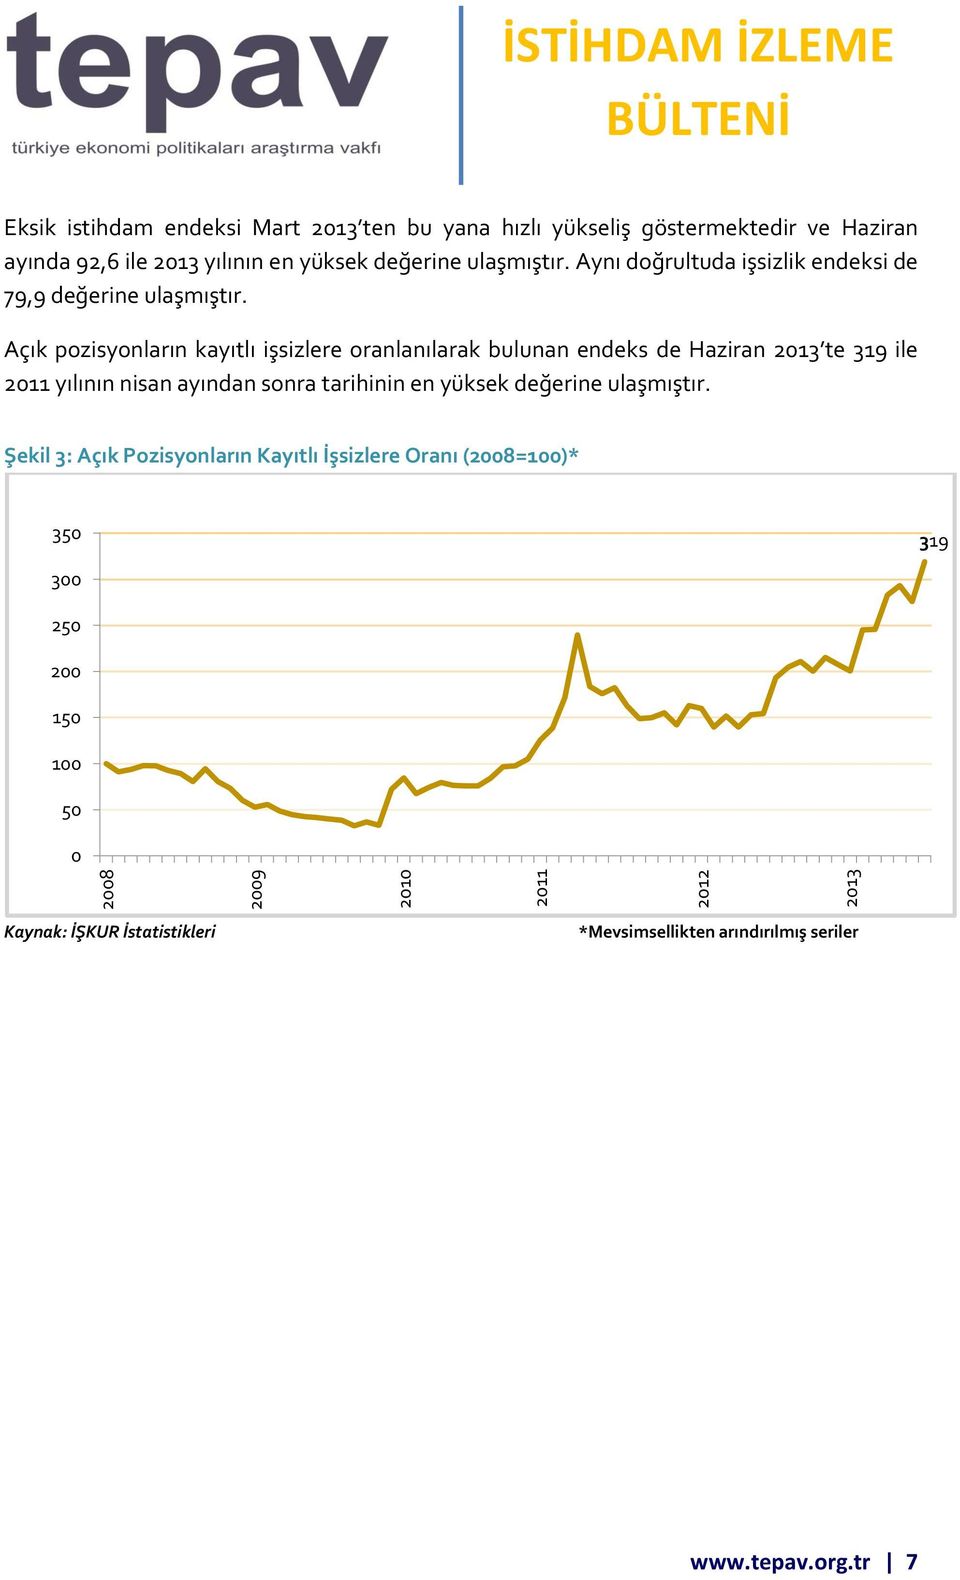 Açık pozisyonların kayıtlı işsizlere oranlanılarak bulunan endeks de Haziran 2013 te 319 ile 2011 yılının nisan ayından sonra tarihinin en yüksek